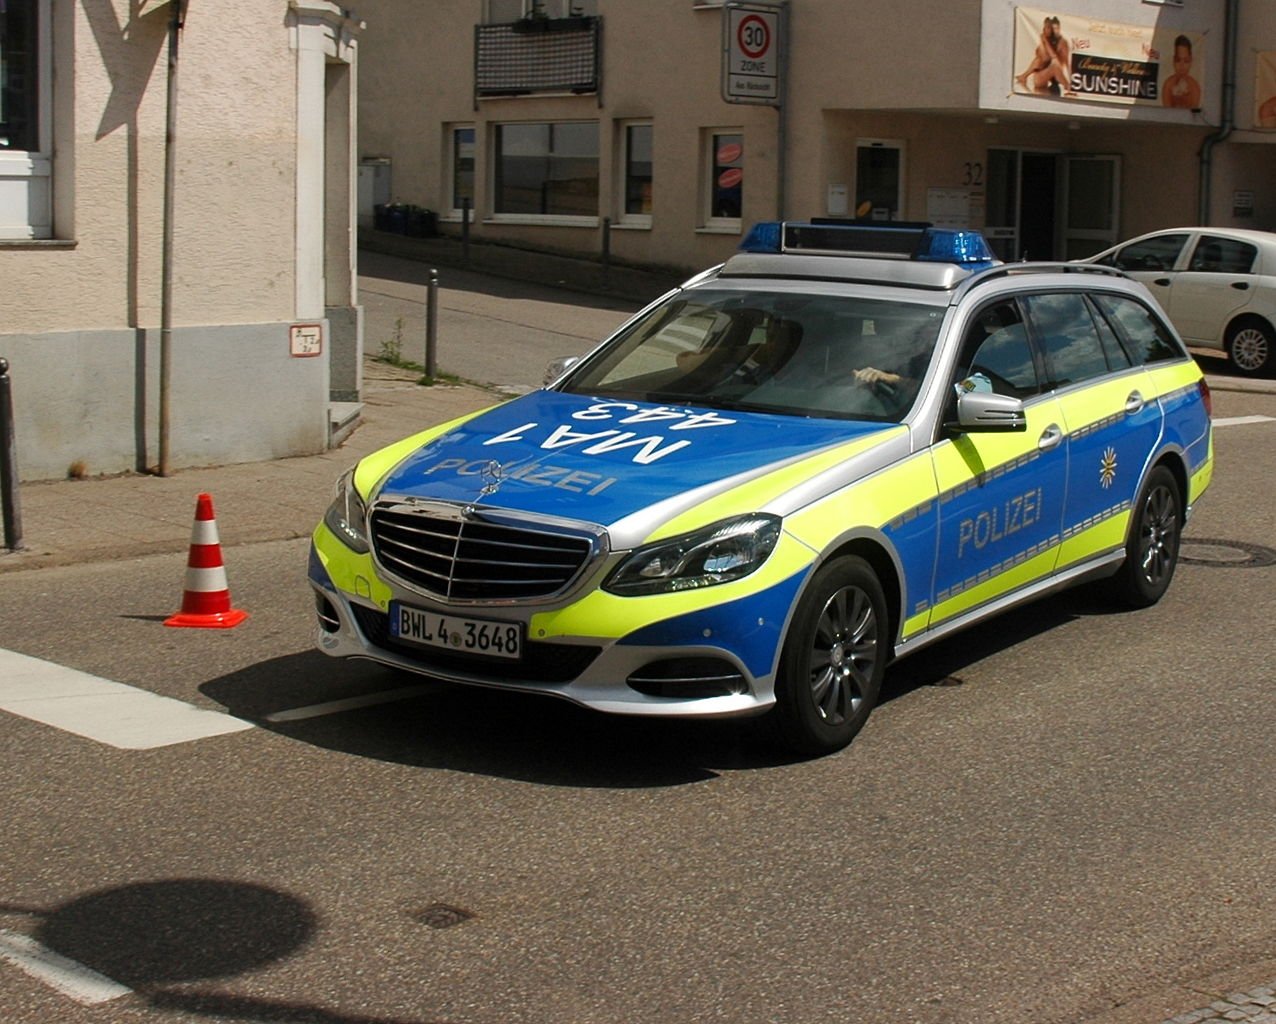 Зеленая полицейская машина. Mercedes-Benz Polizei. Мерседес Polizei. Полицейские автомобили ФРГ. Мерседес полиция Германии.